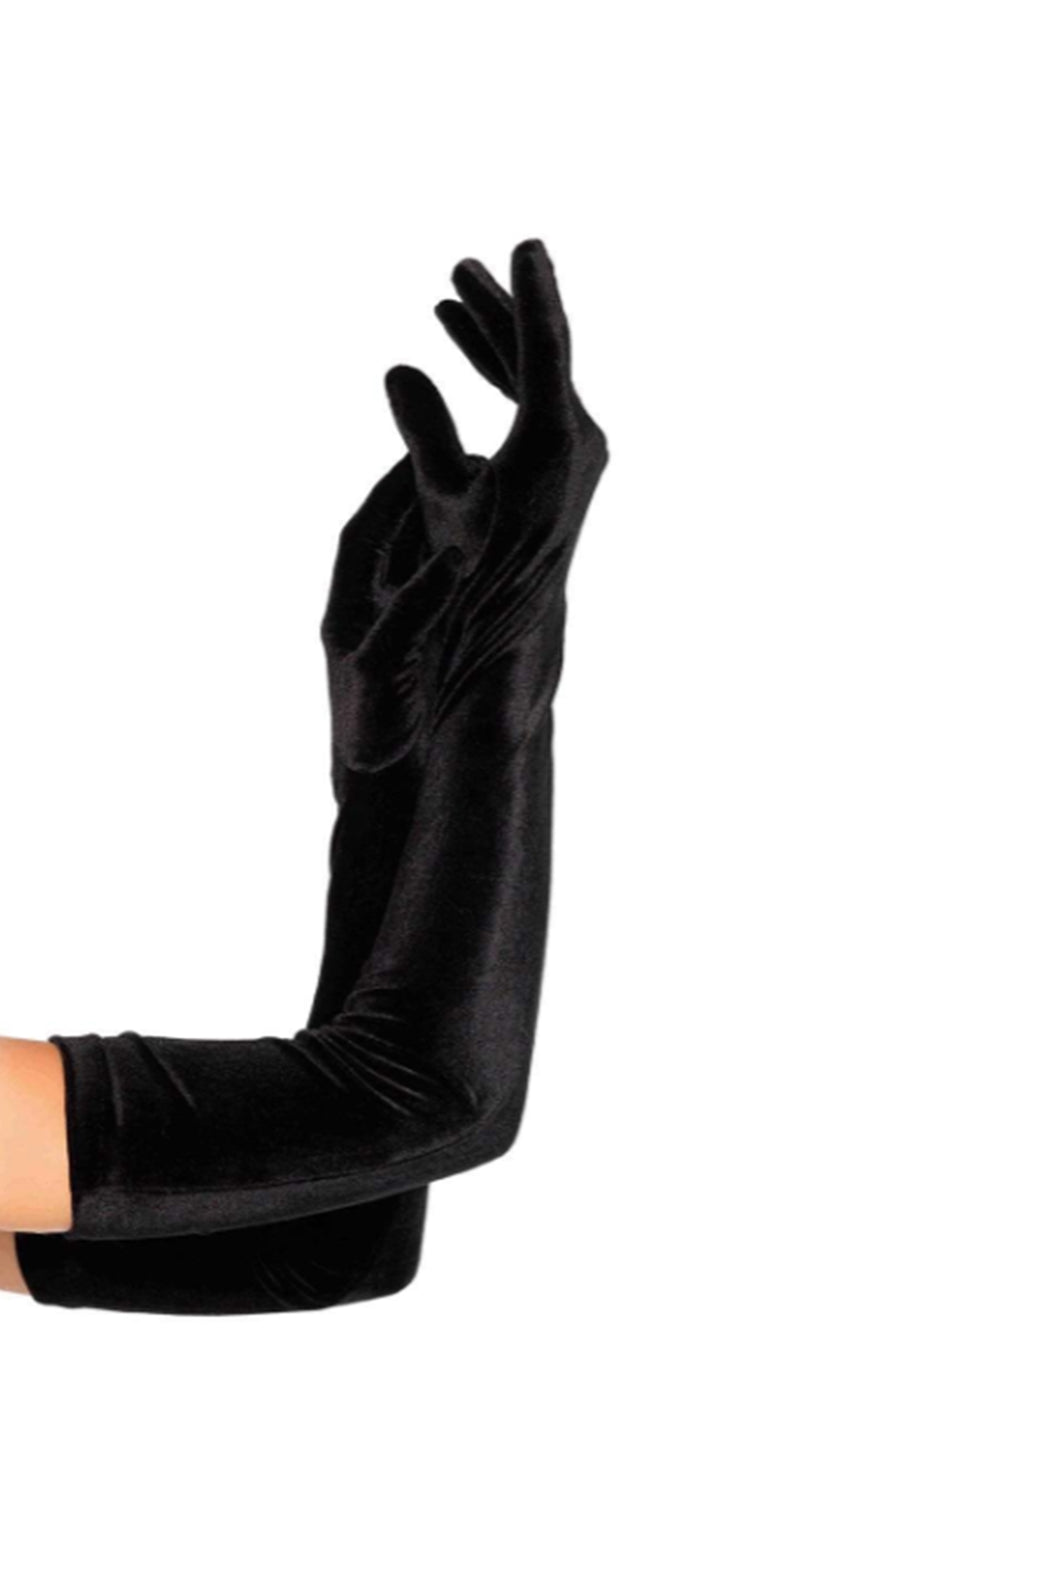 Black Stretch Velvet Opera Length Gloves